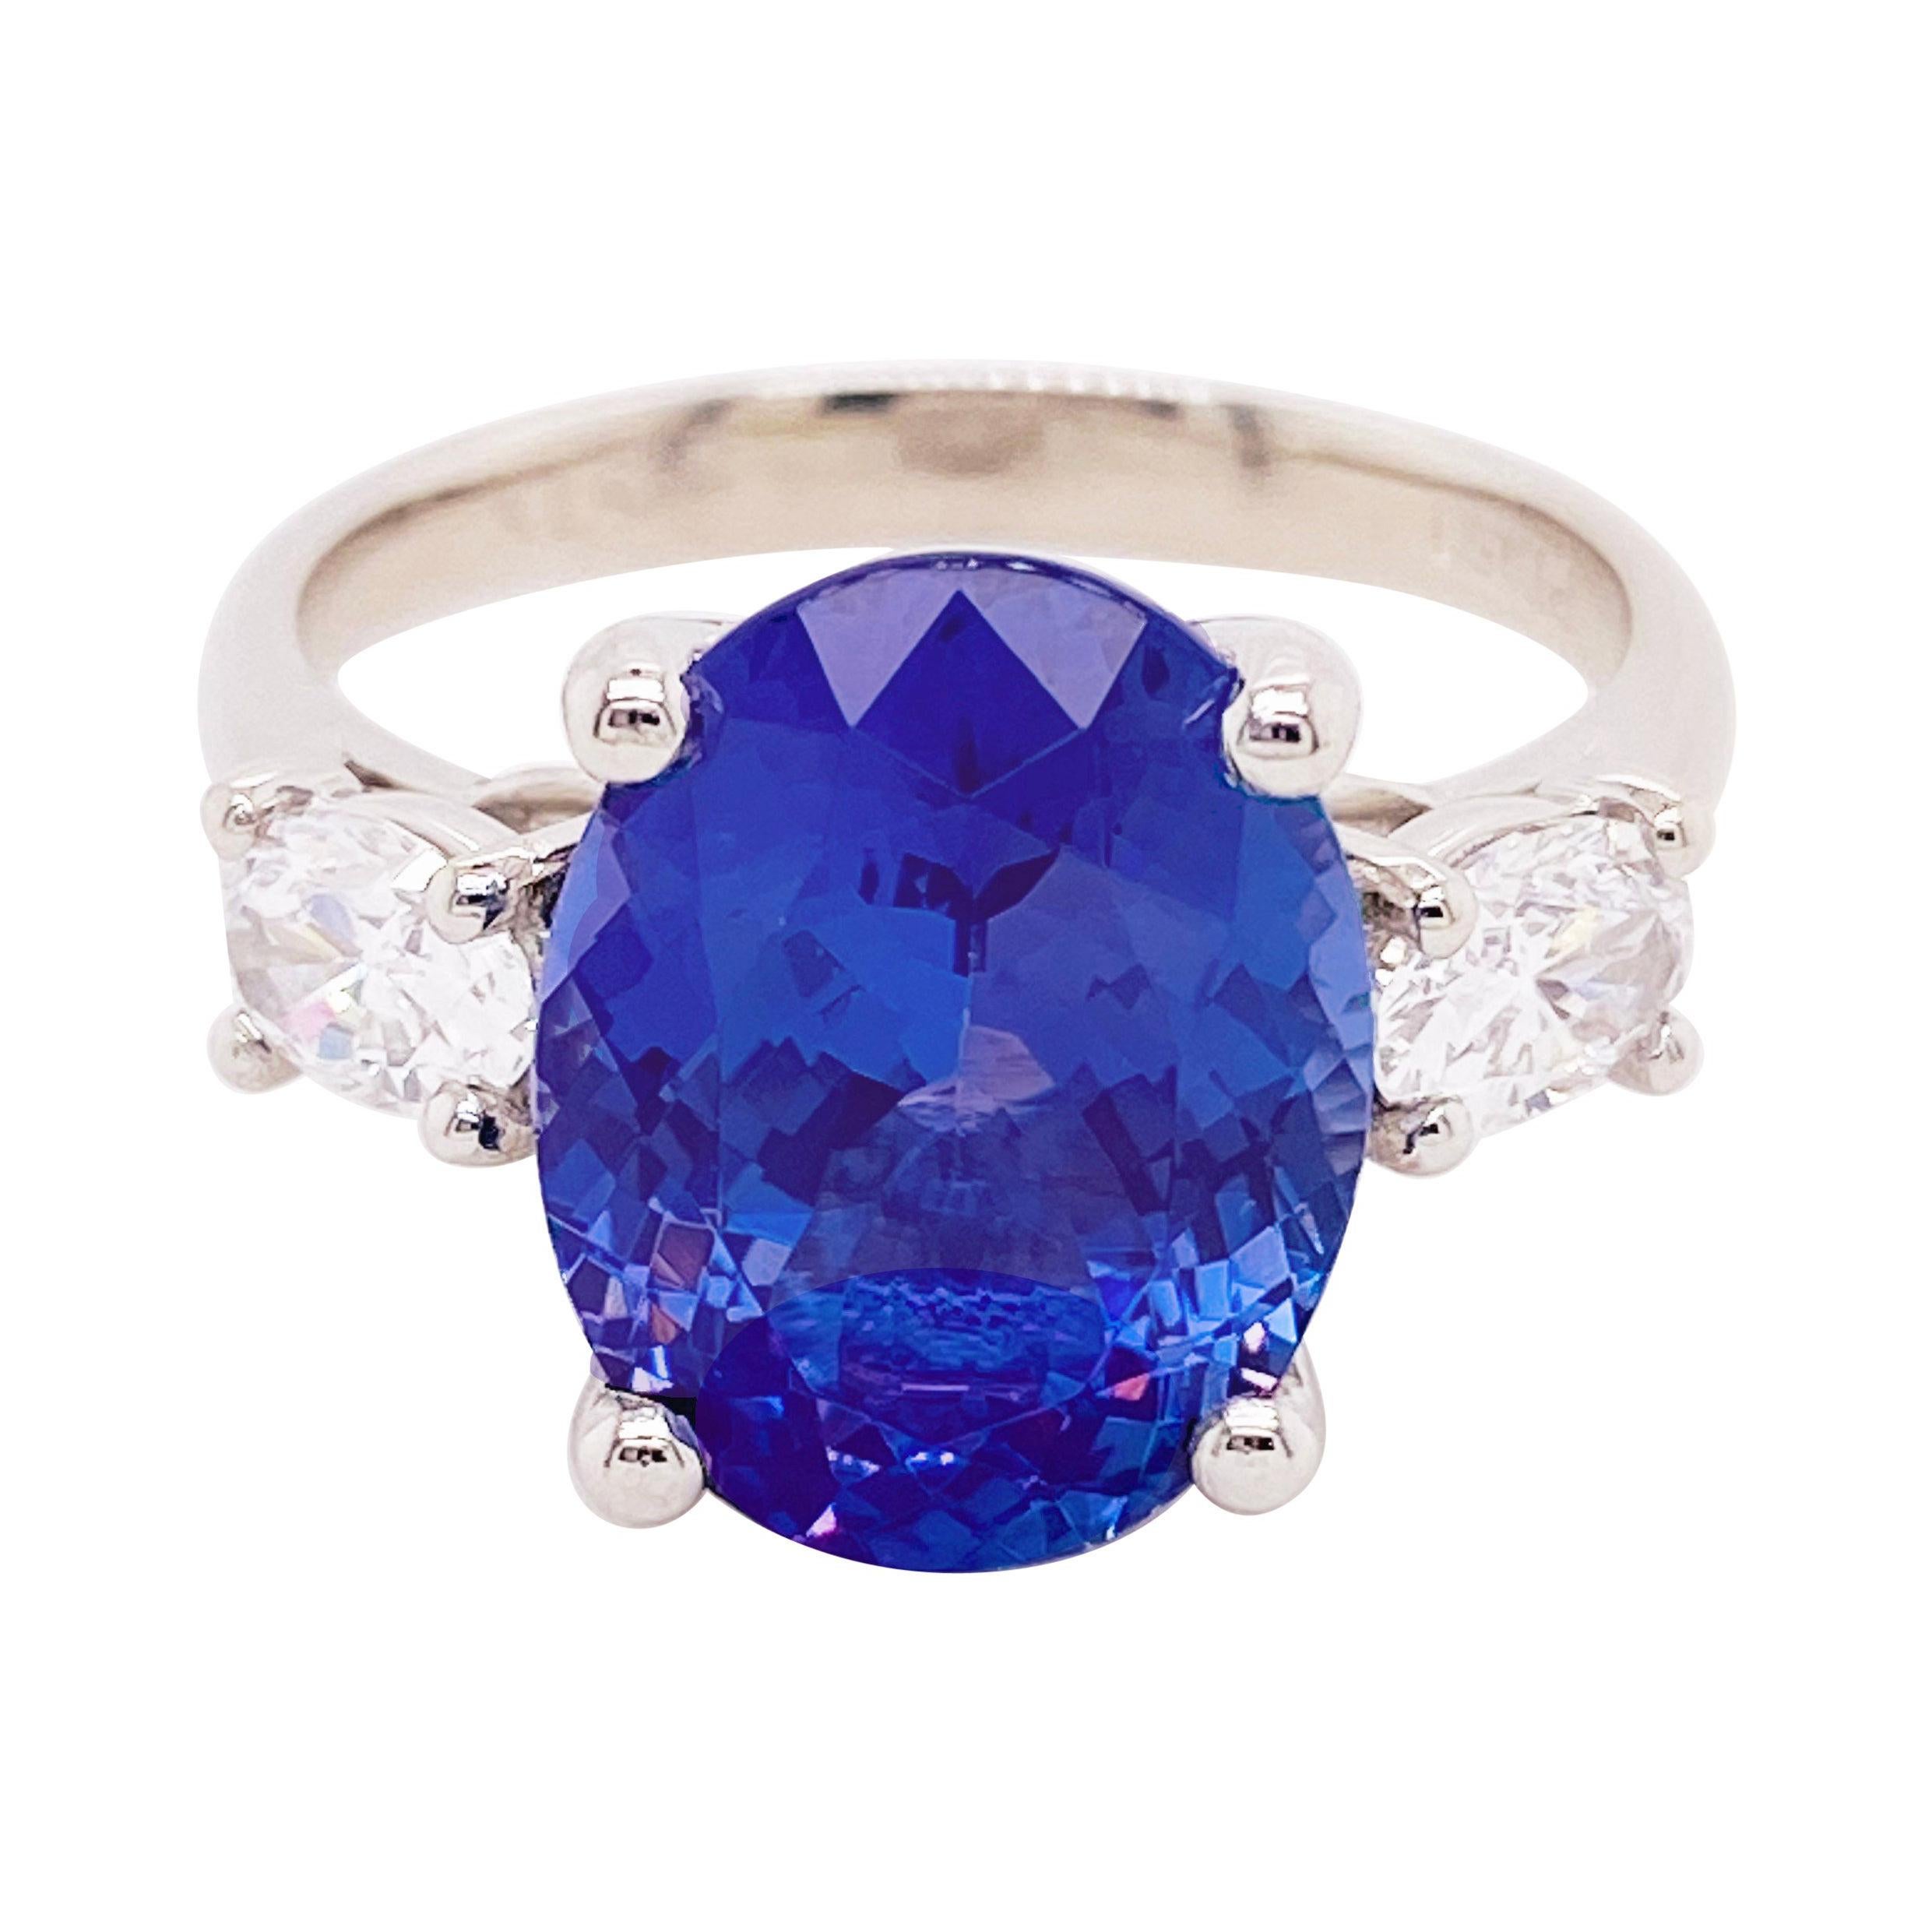 For Sale:  Tanzanite Diamond Ring, 4.77 Carat Tanz, 14 Karat Gold Three-Stone Ring